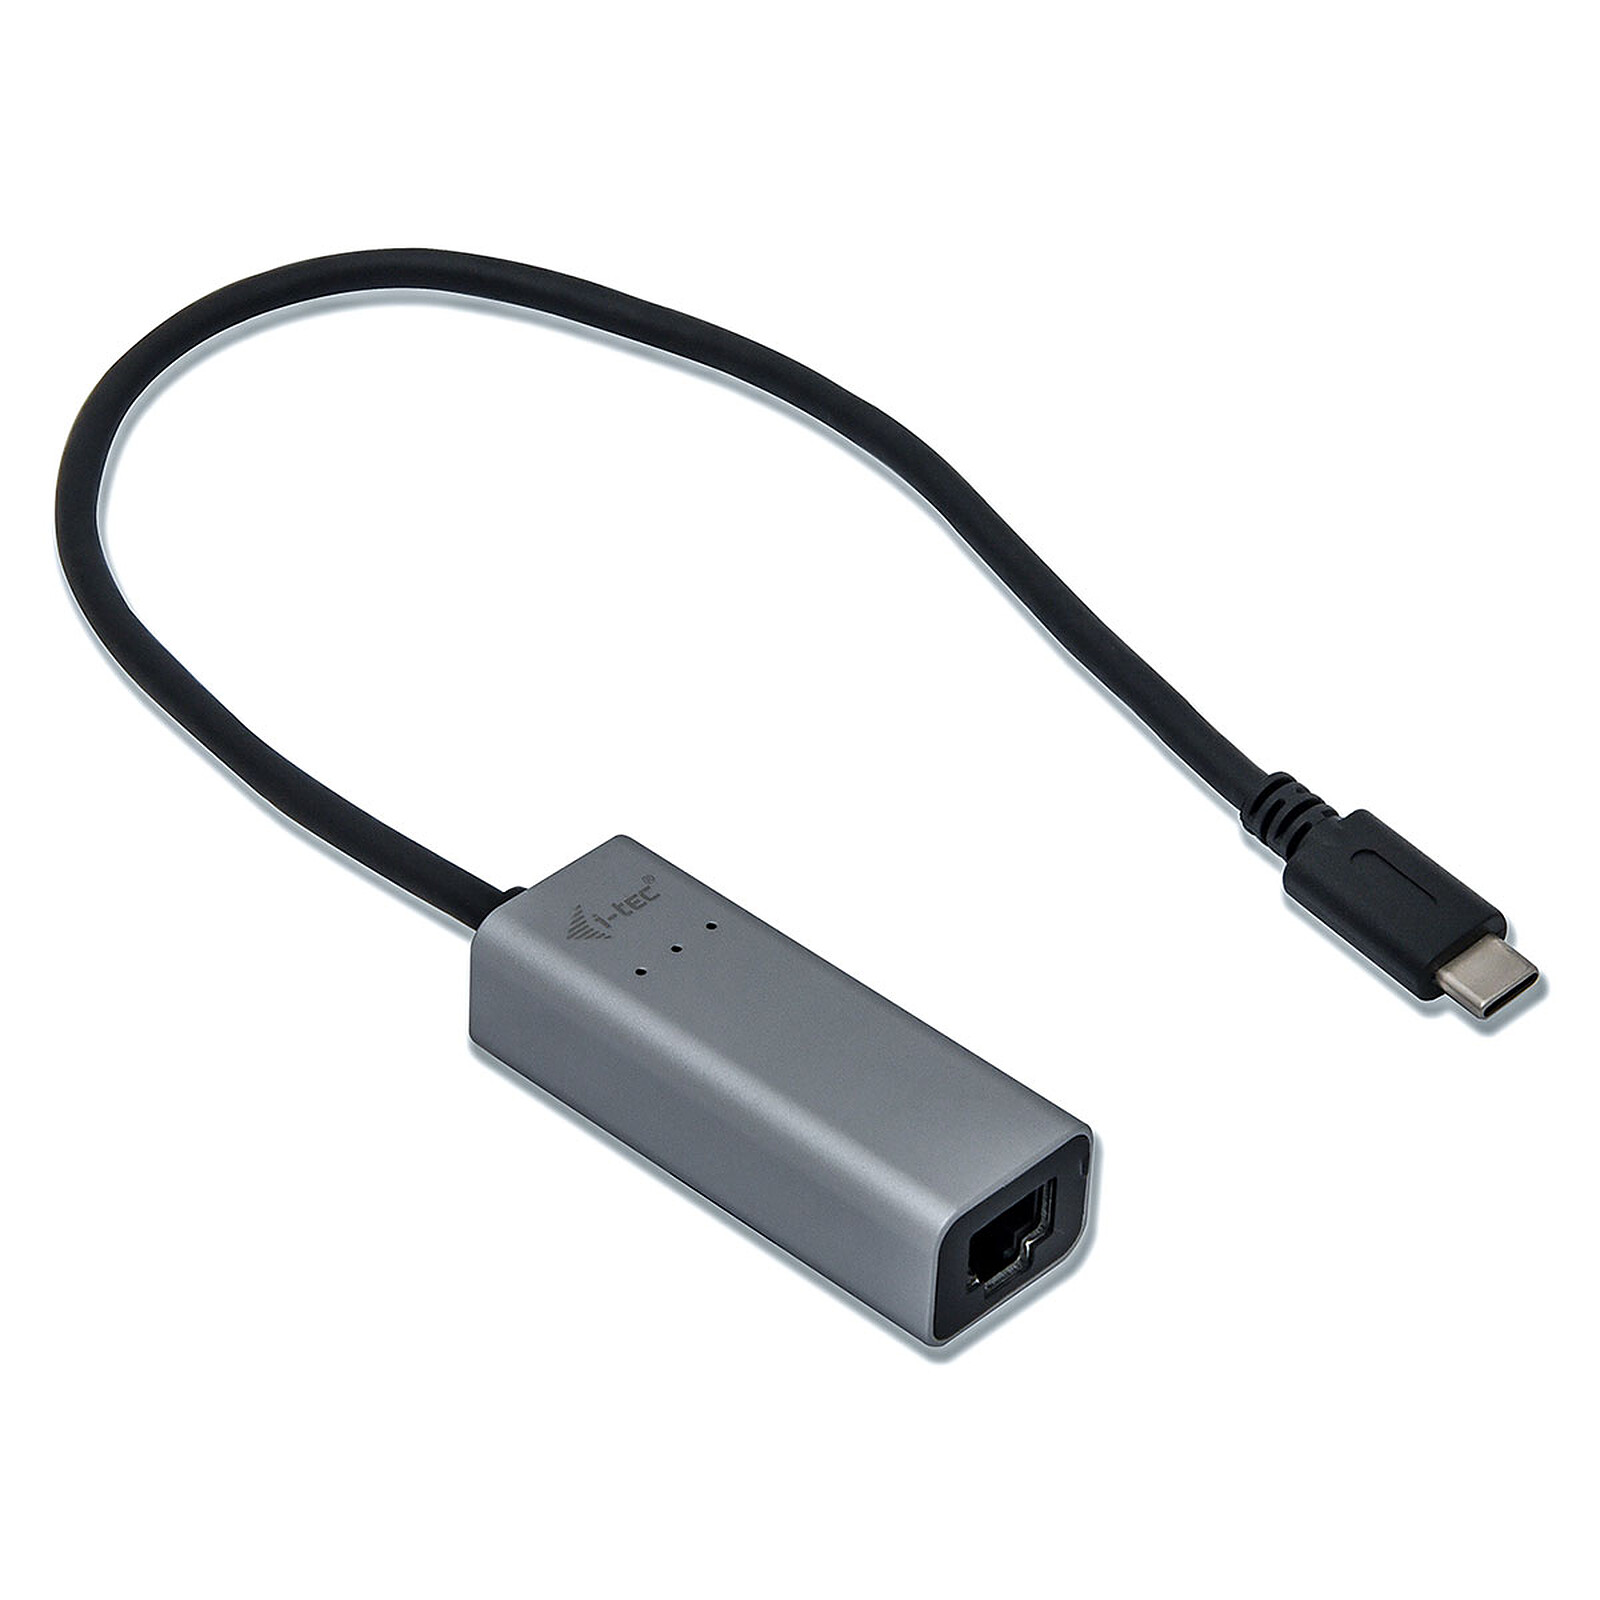 i-tec Adaptateur métal USB-C vers HDMI - HDMI - Garantie 3 ans LDLC